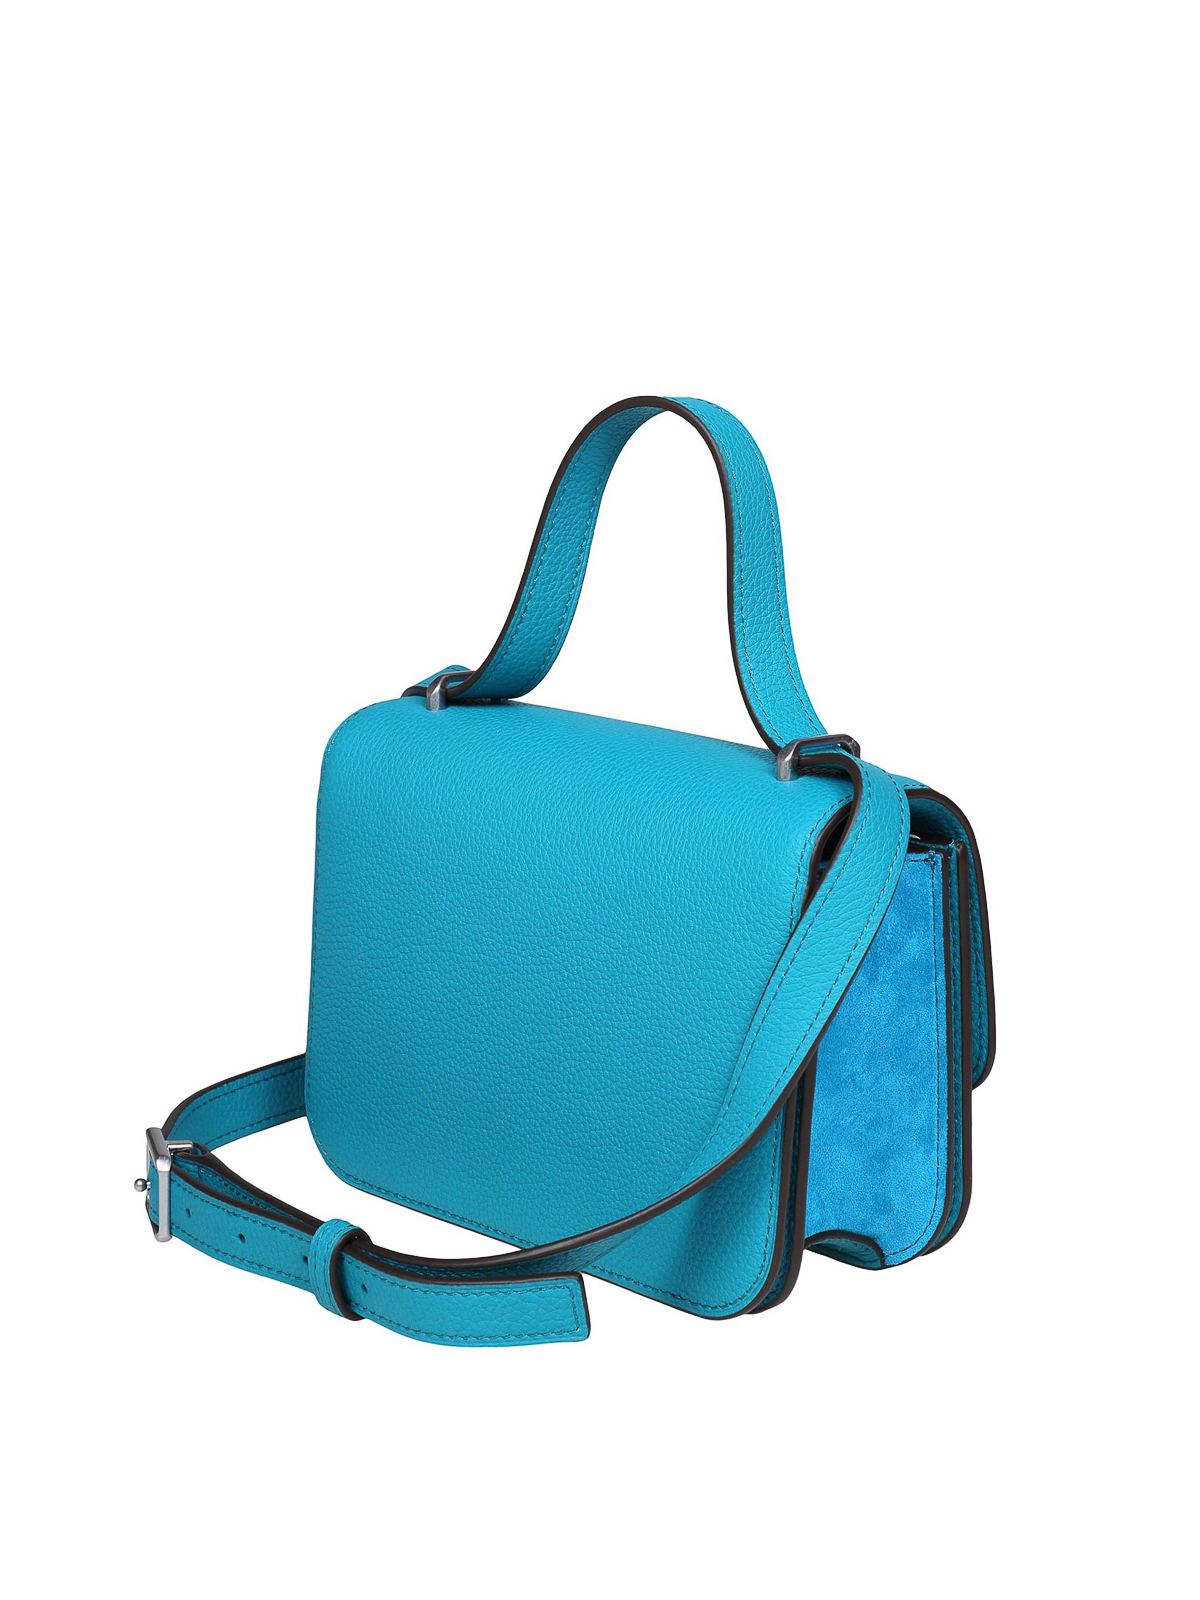 Eleanor Bag: Women's Handbags, Shoulder Bags